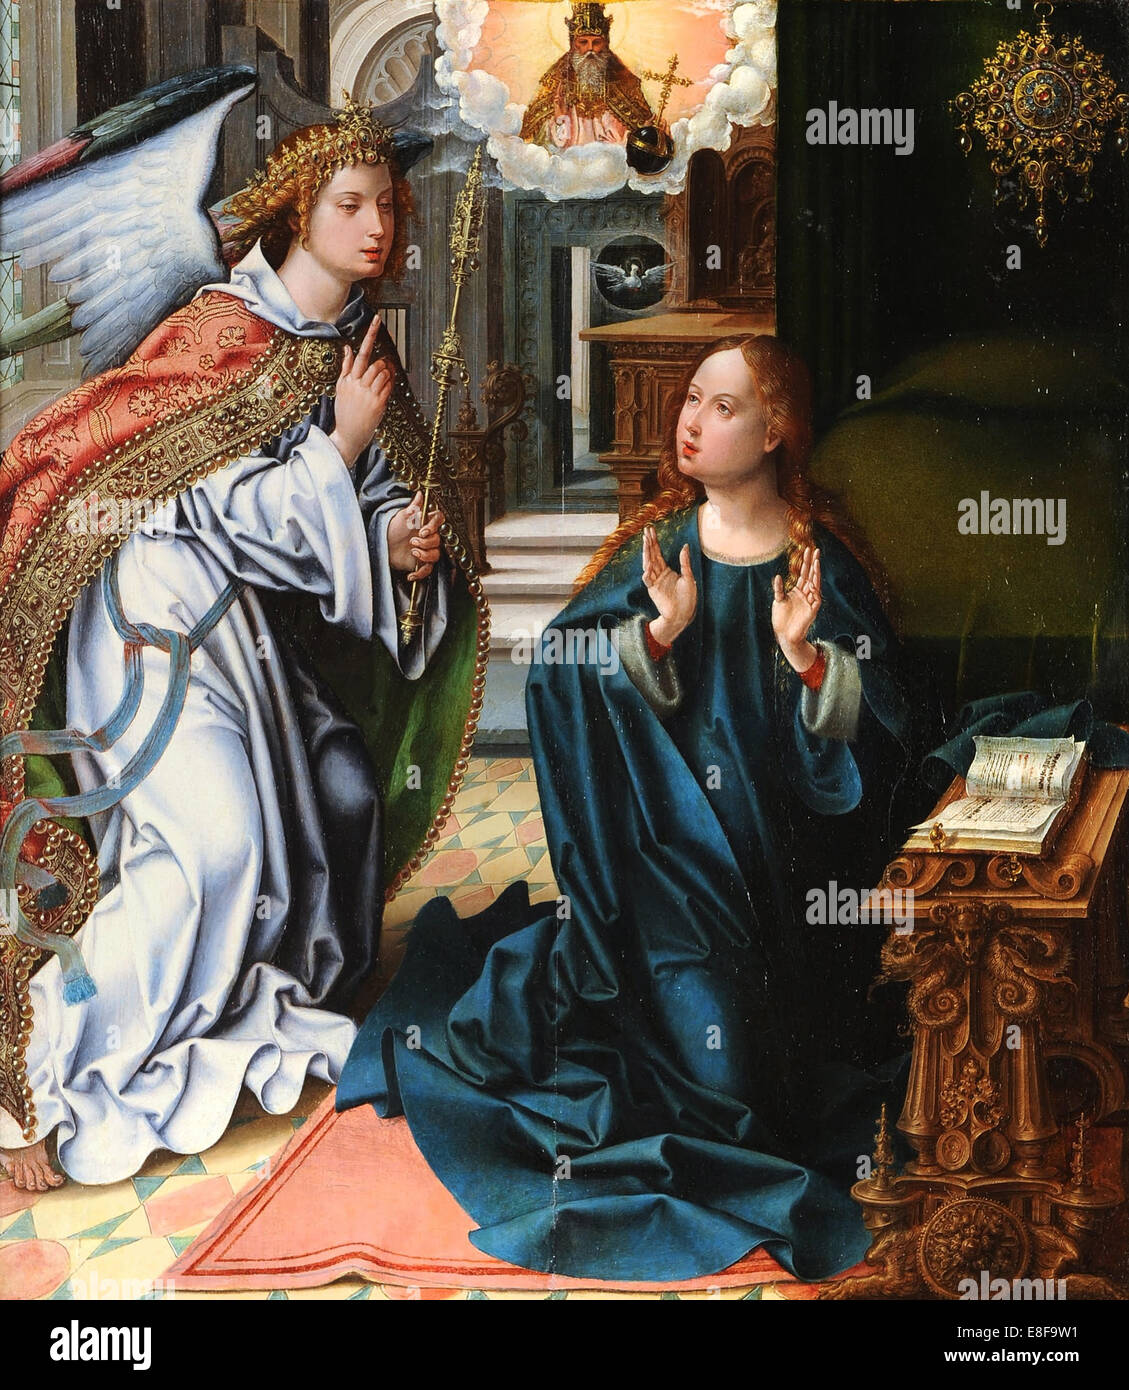 L'Annunciazione. Artista: Coecke Van Aelst, Pieter, il Vecchio (1502-1550) Foto Stock